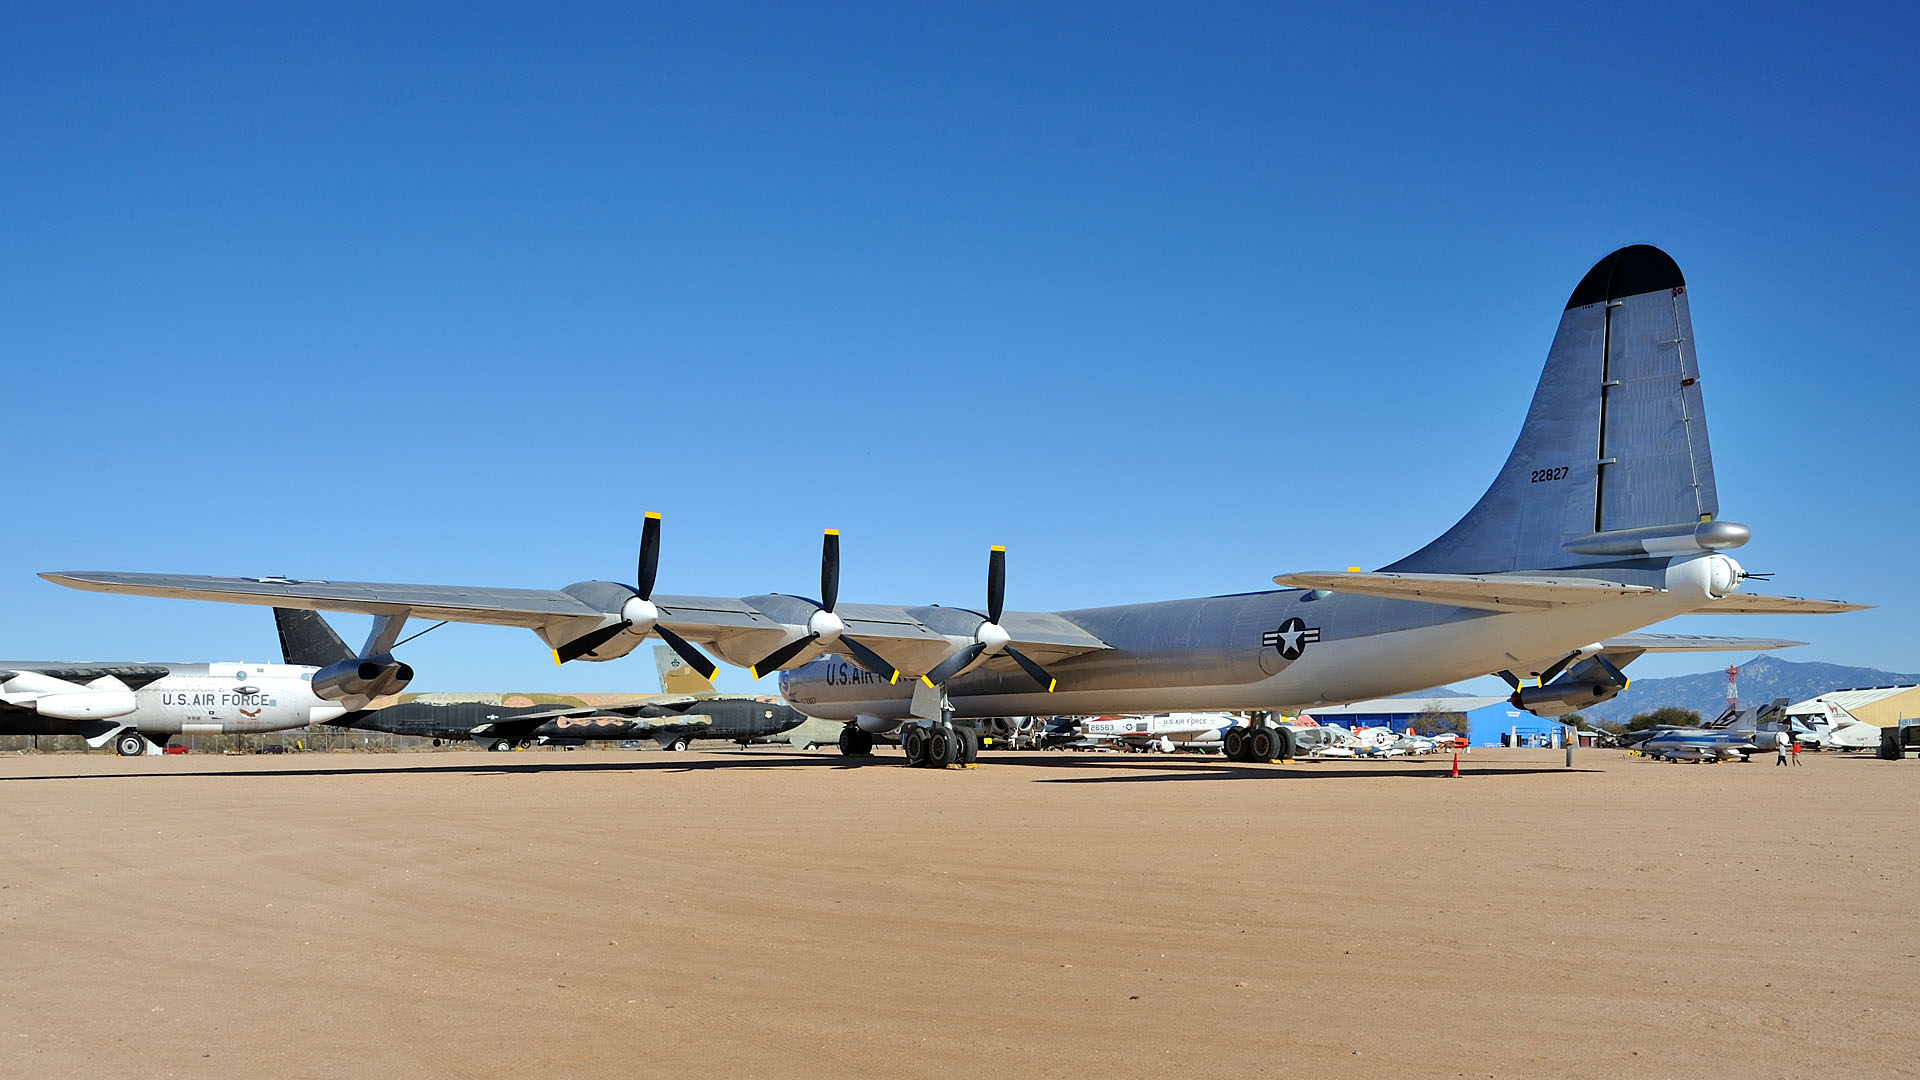 самолет, бомбардировщик, B- 36 Миротворец, Convair, SAC, Команда стратегической авиации - обои на рабочий стол